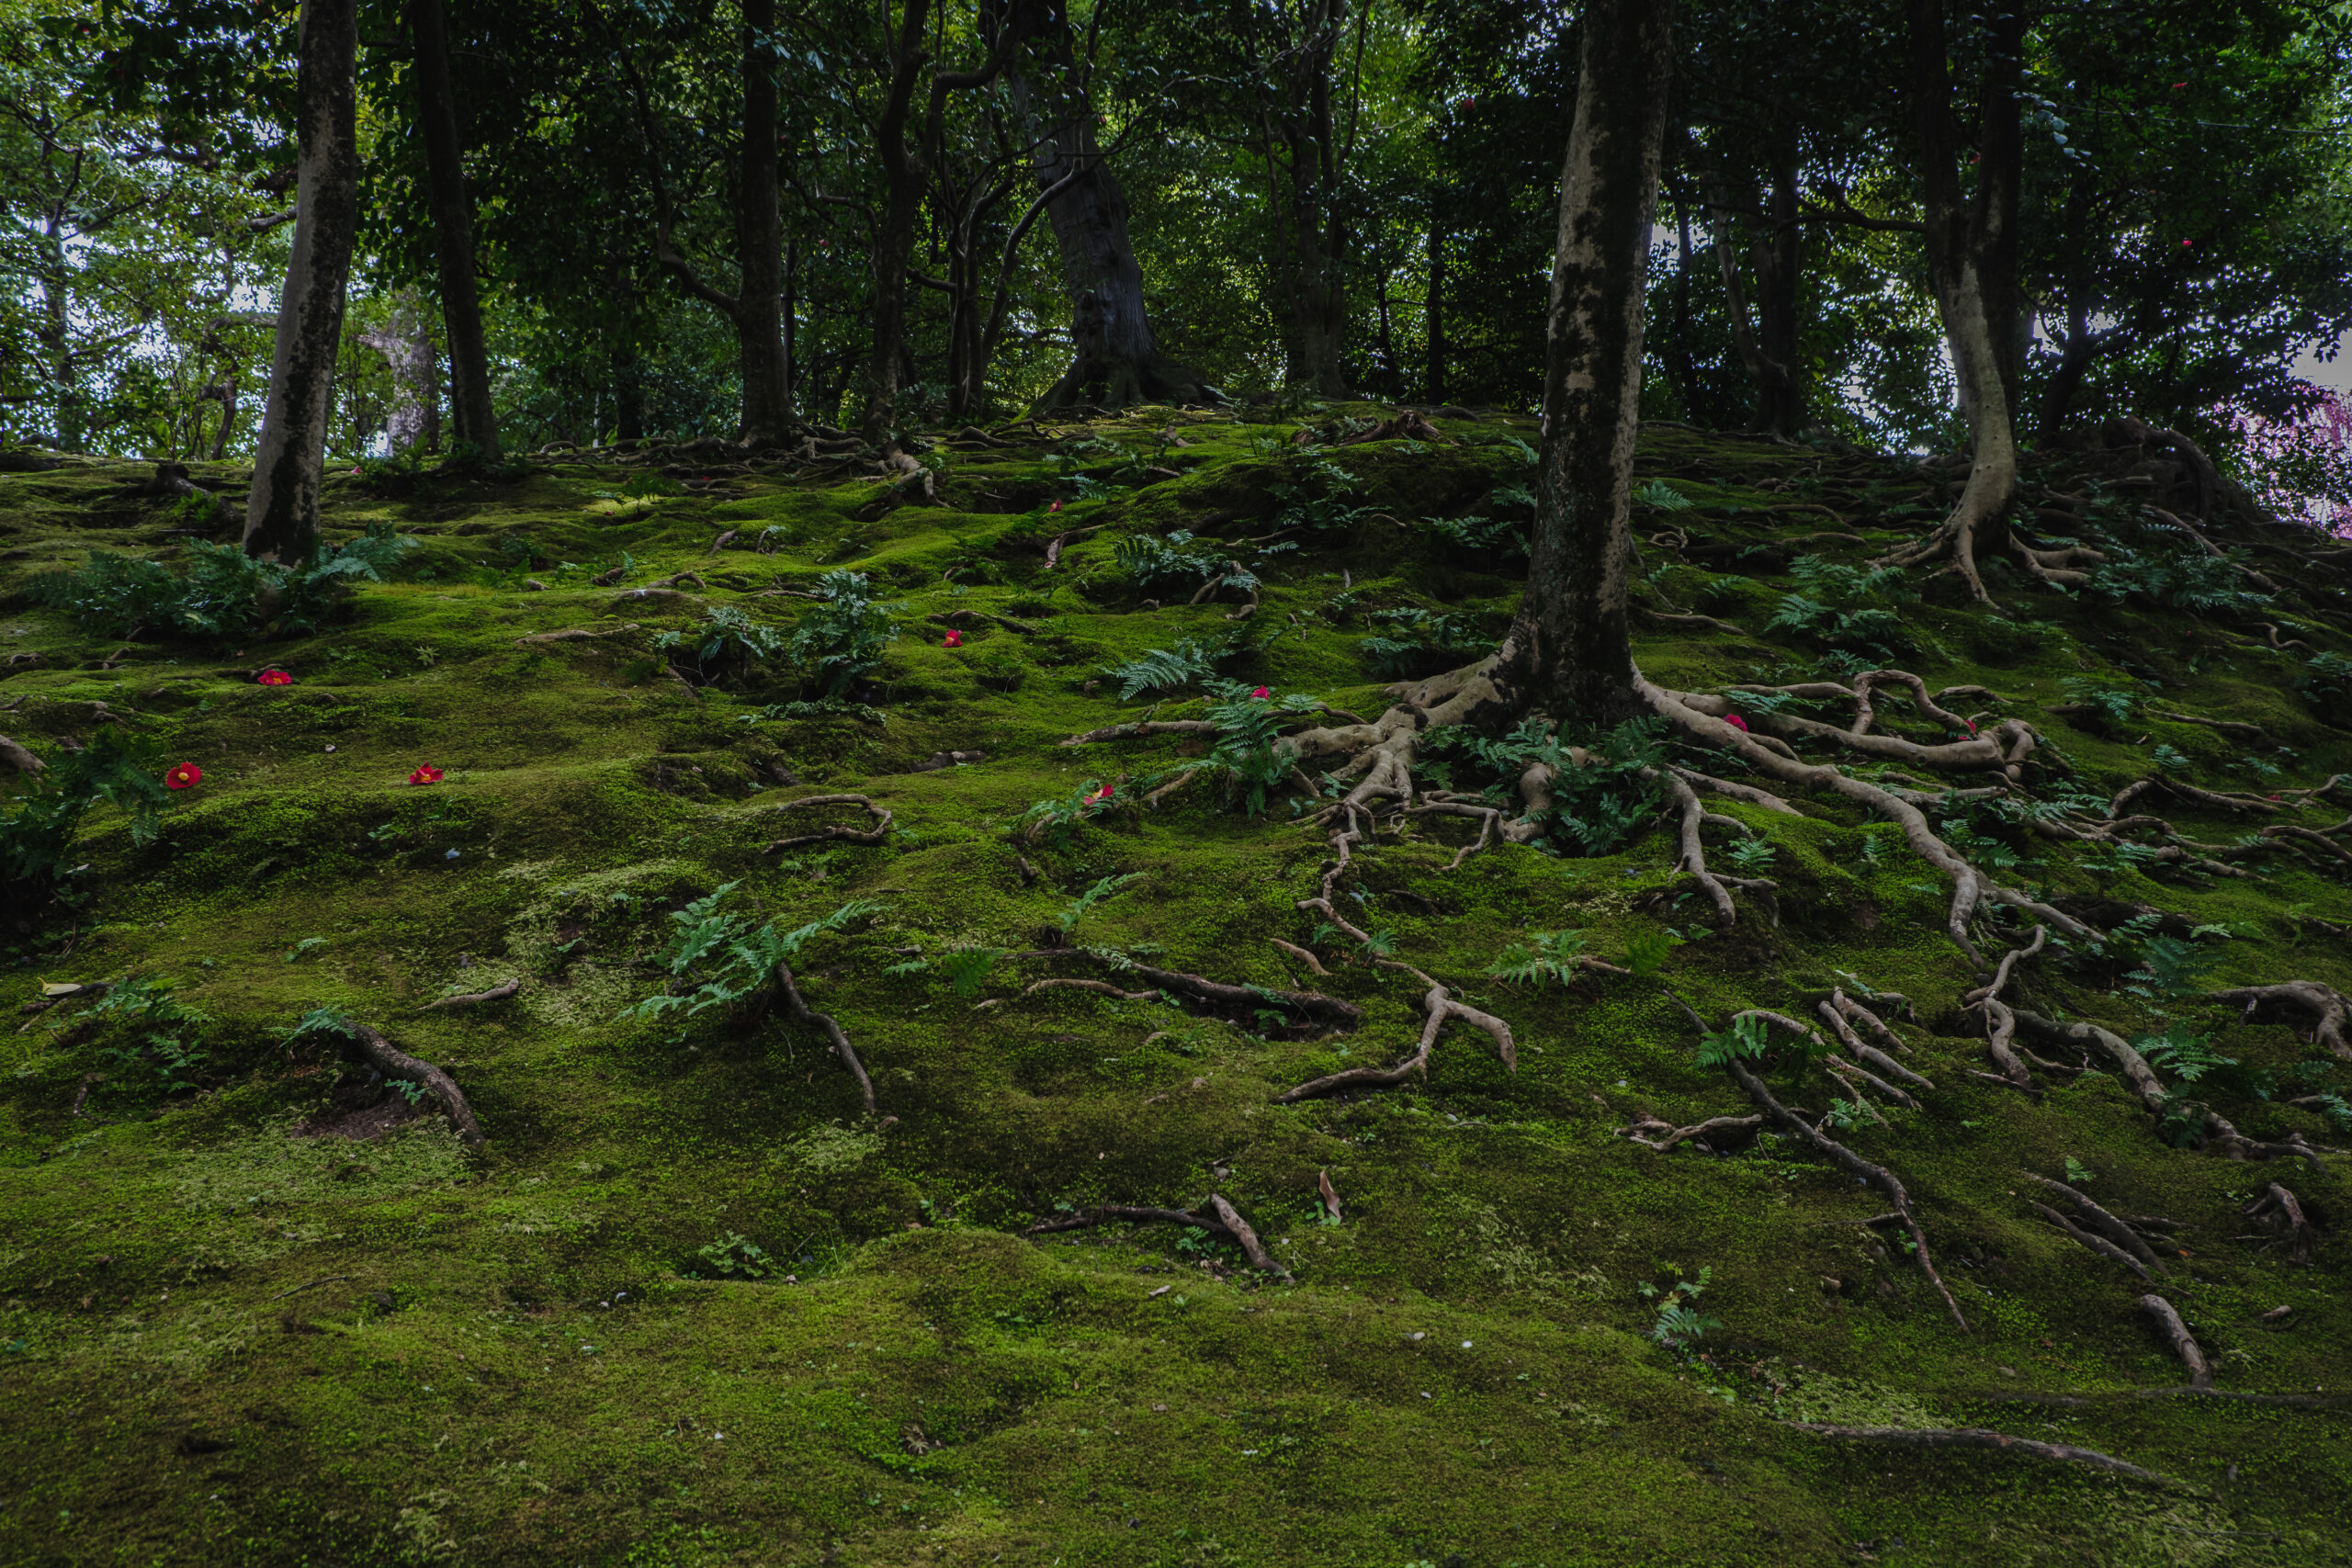 DSCF0980-scaled 京都 城南宮(庭園に咲く150本の枝垂梅が絶景の写真スポット! 撮影した写真の紹介、アクセス情報や交通手段・駐車場情報などまとめ)